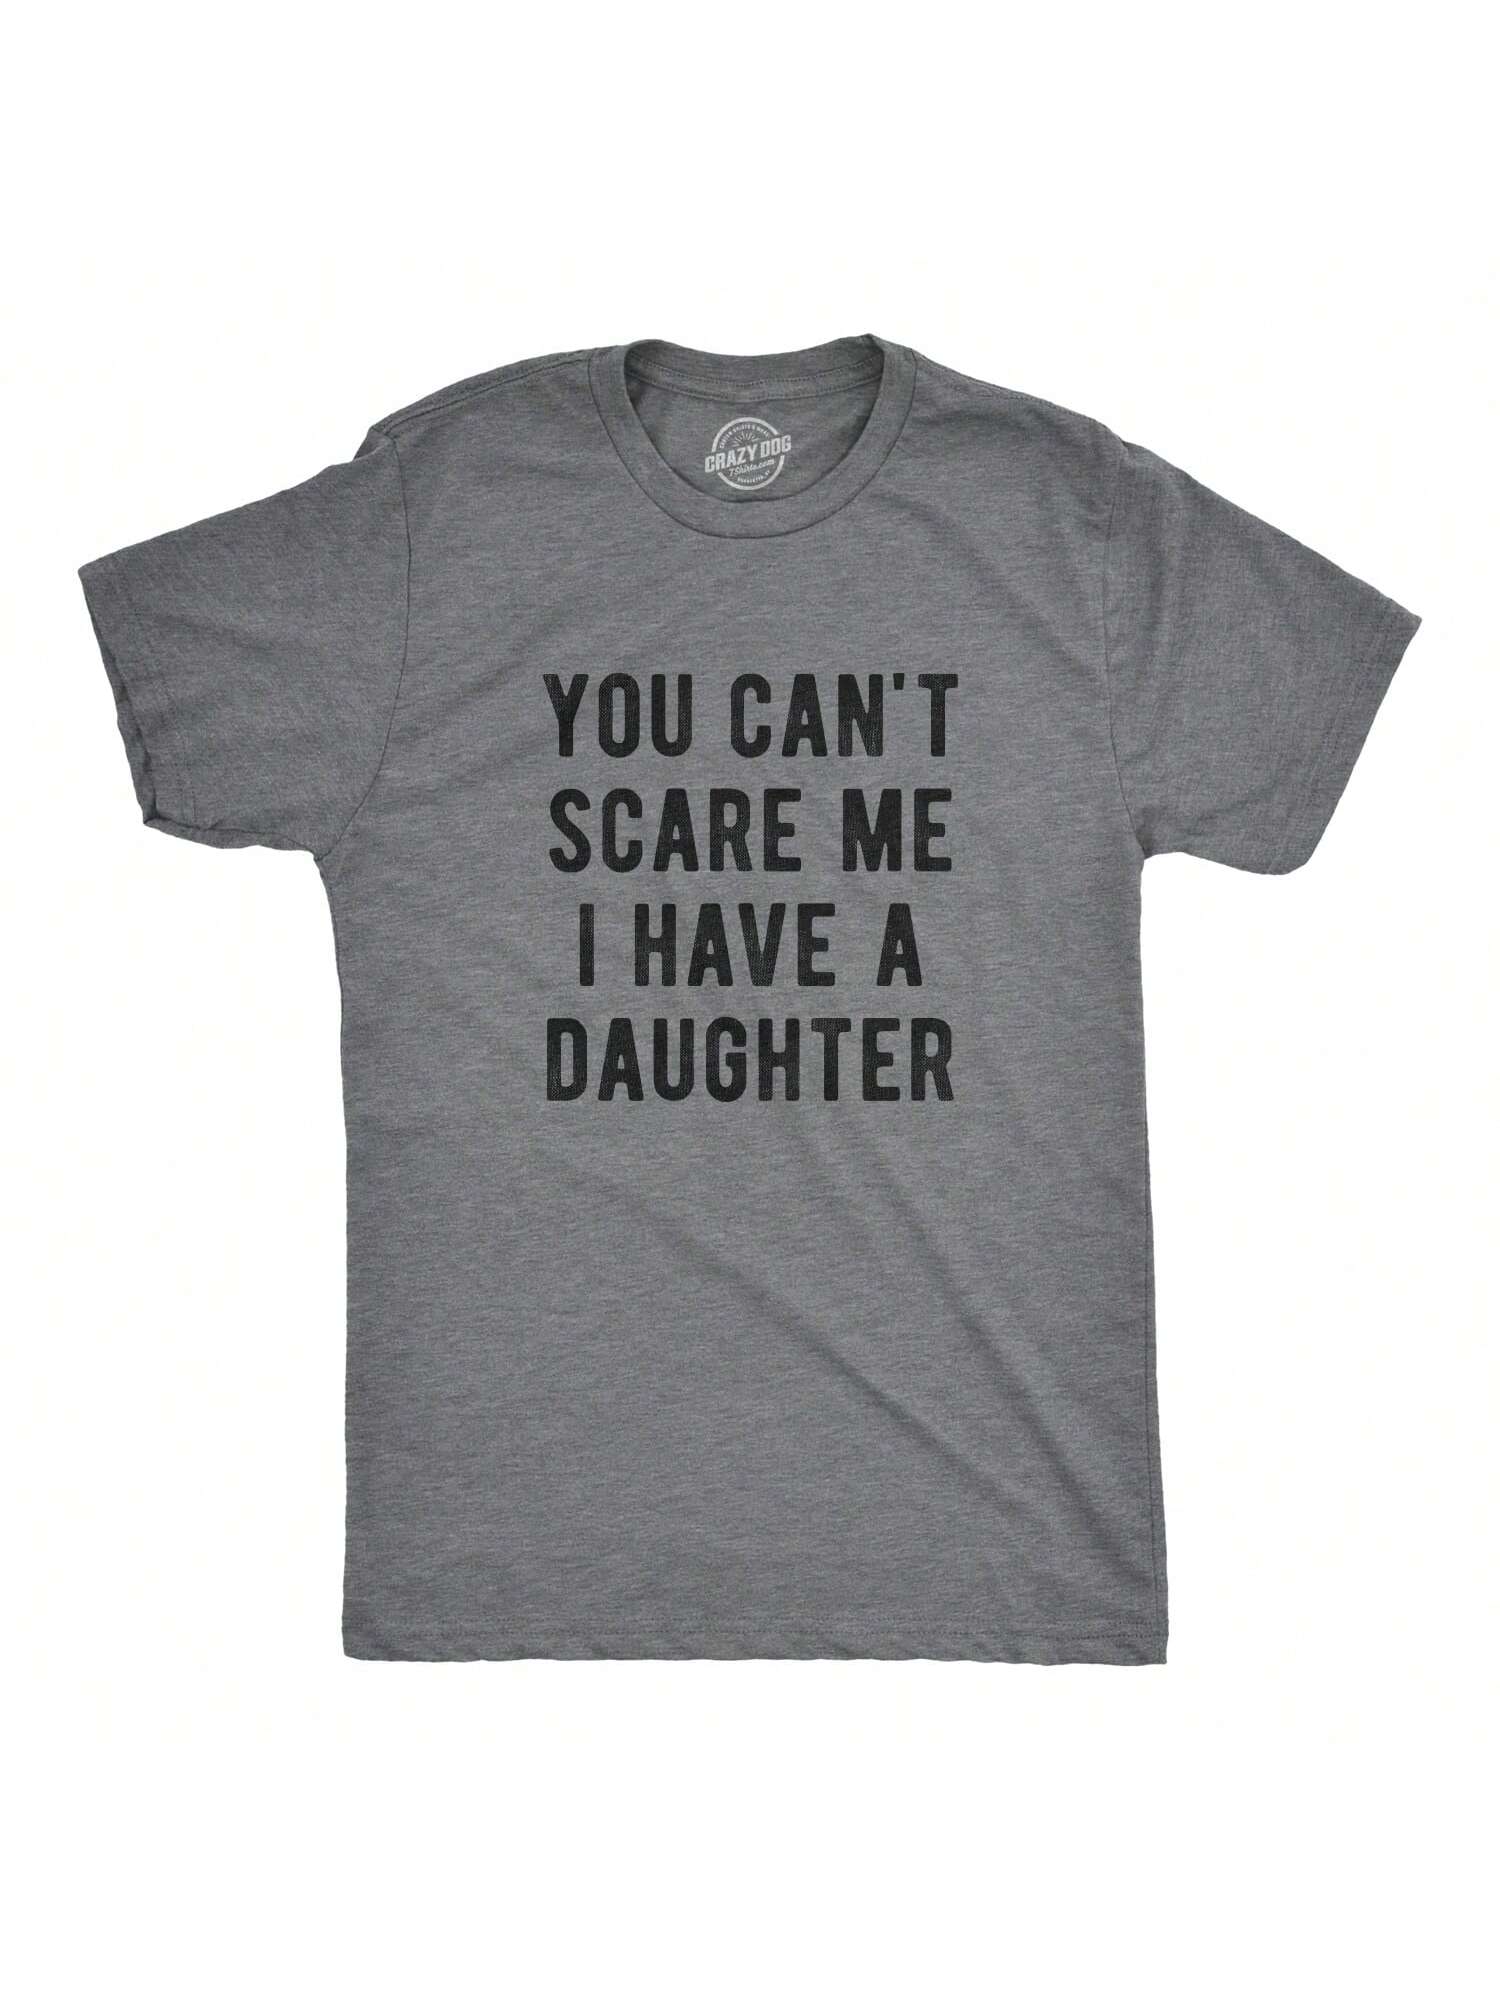 Мужская футболка «Ты не напугаешь меня, темная хизер грей — дочь